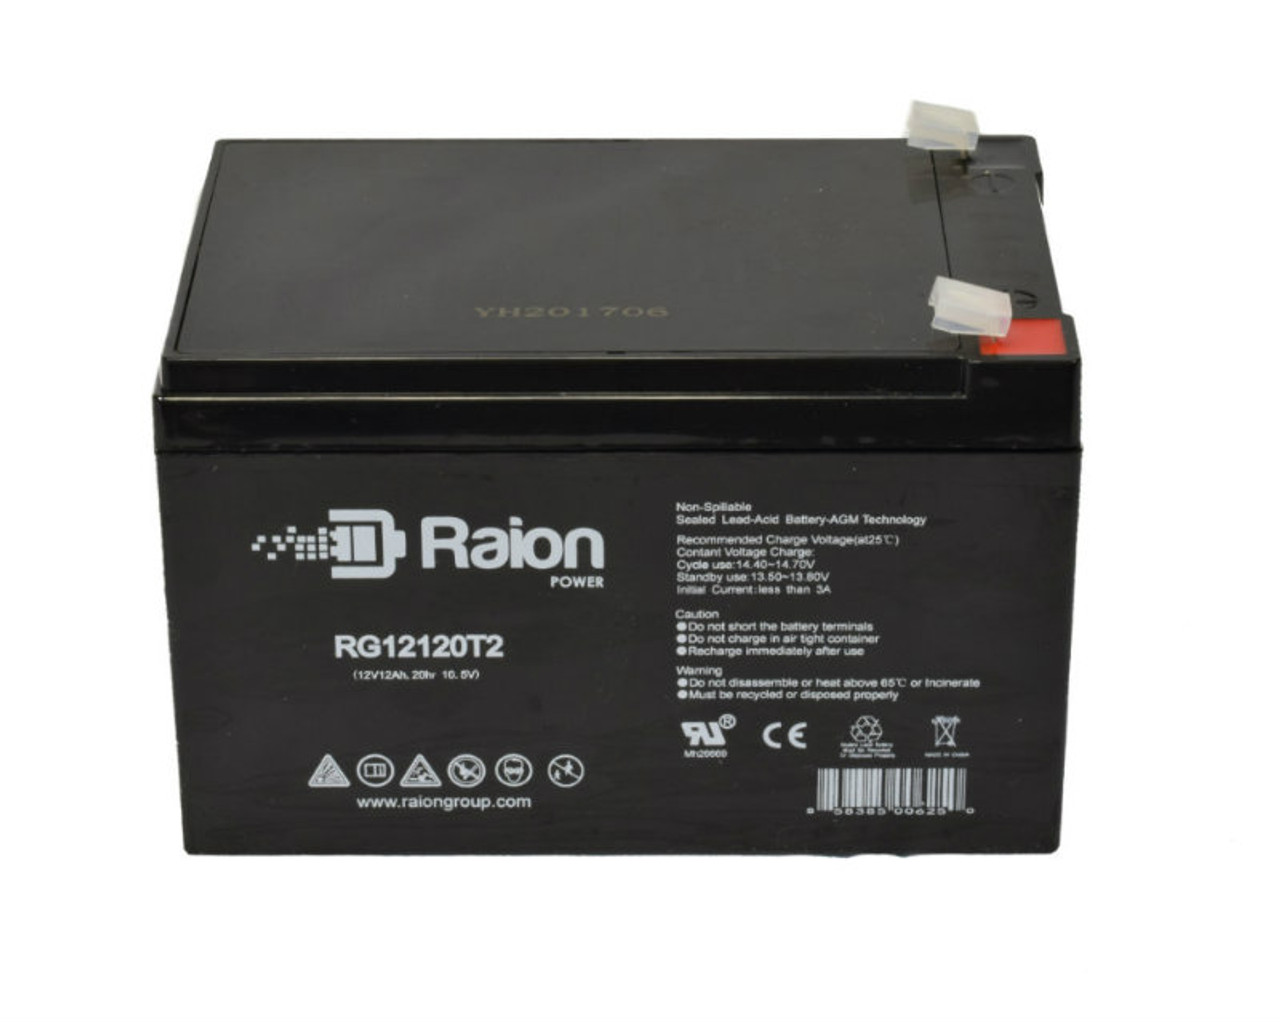 Raion Power RG12120T2 SLA Battery for Kaiying KS12-12D